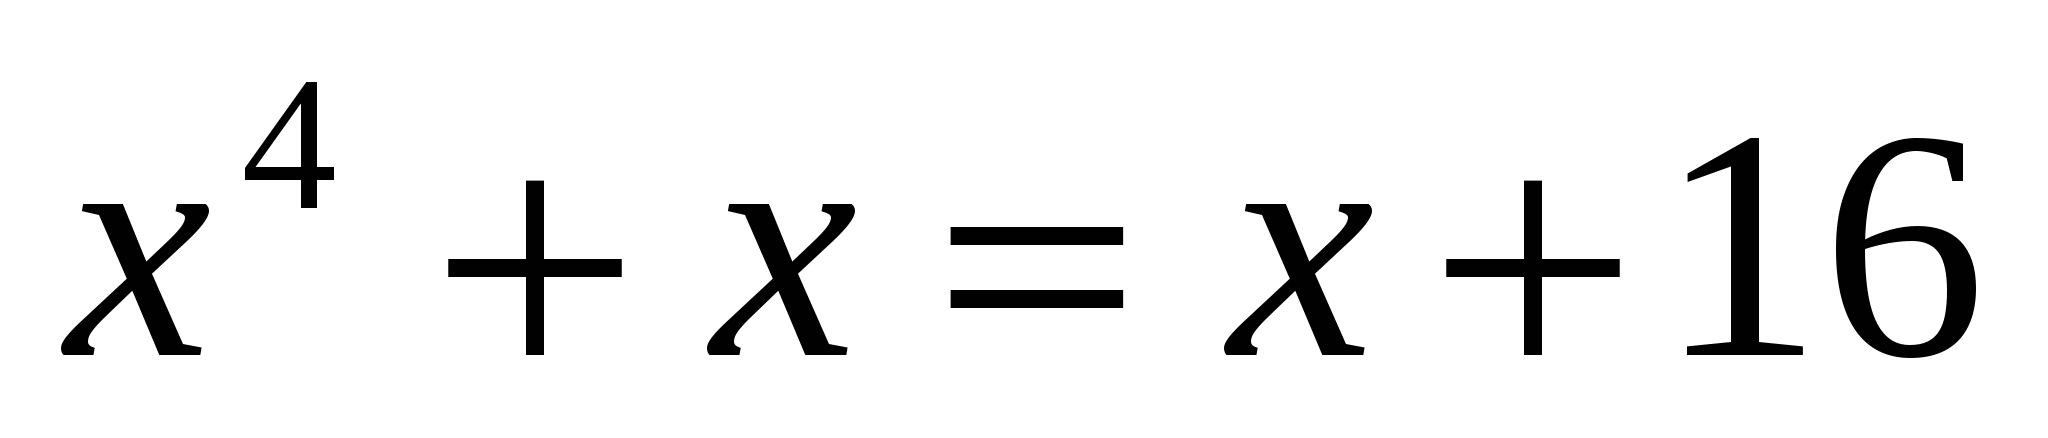 Методическая разработка урока алгебры в современной информационно-образовательной среде по теме: «Уравнения и неравенства с одной переменной